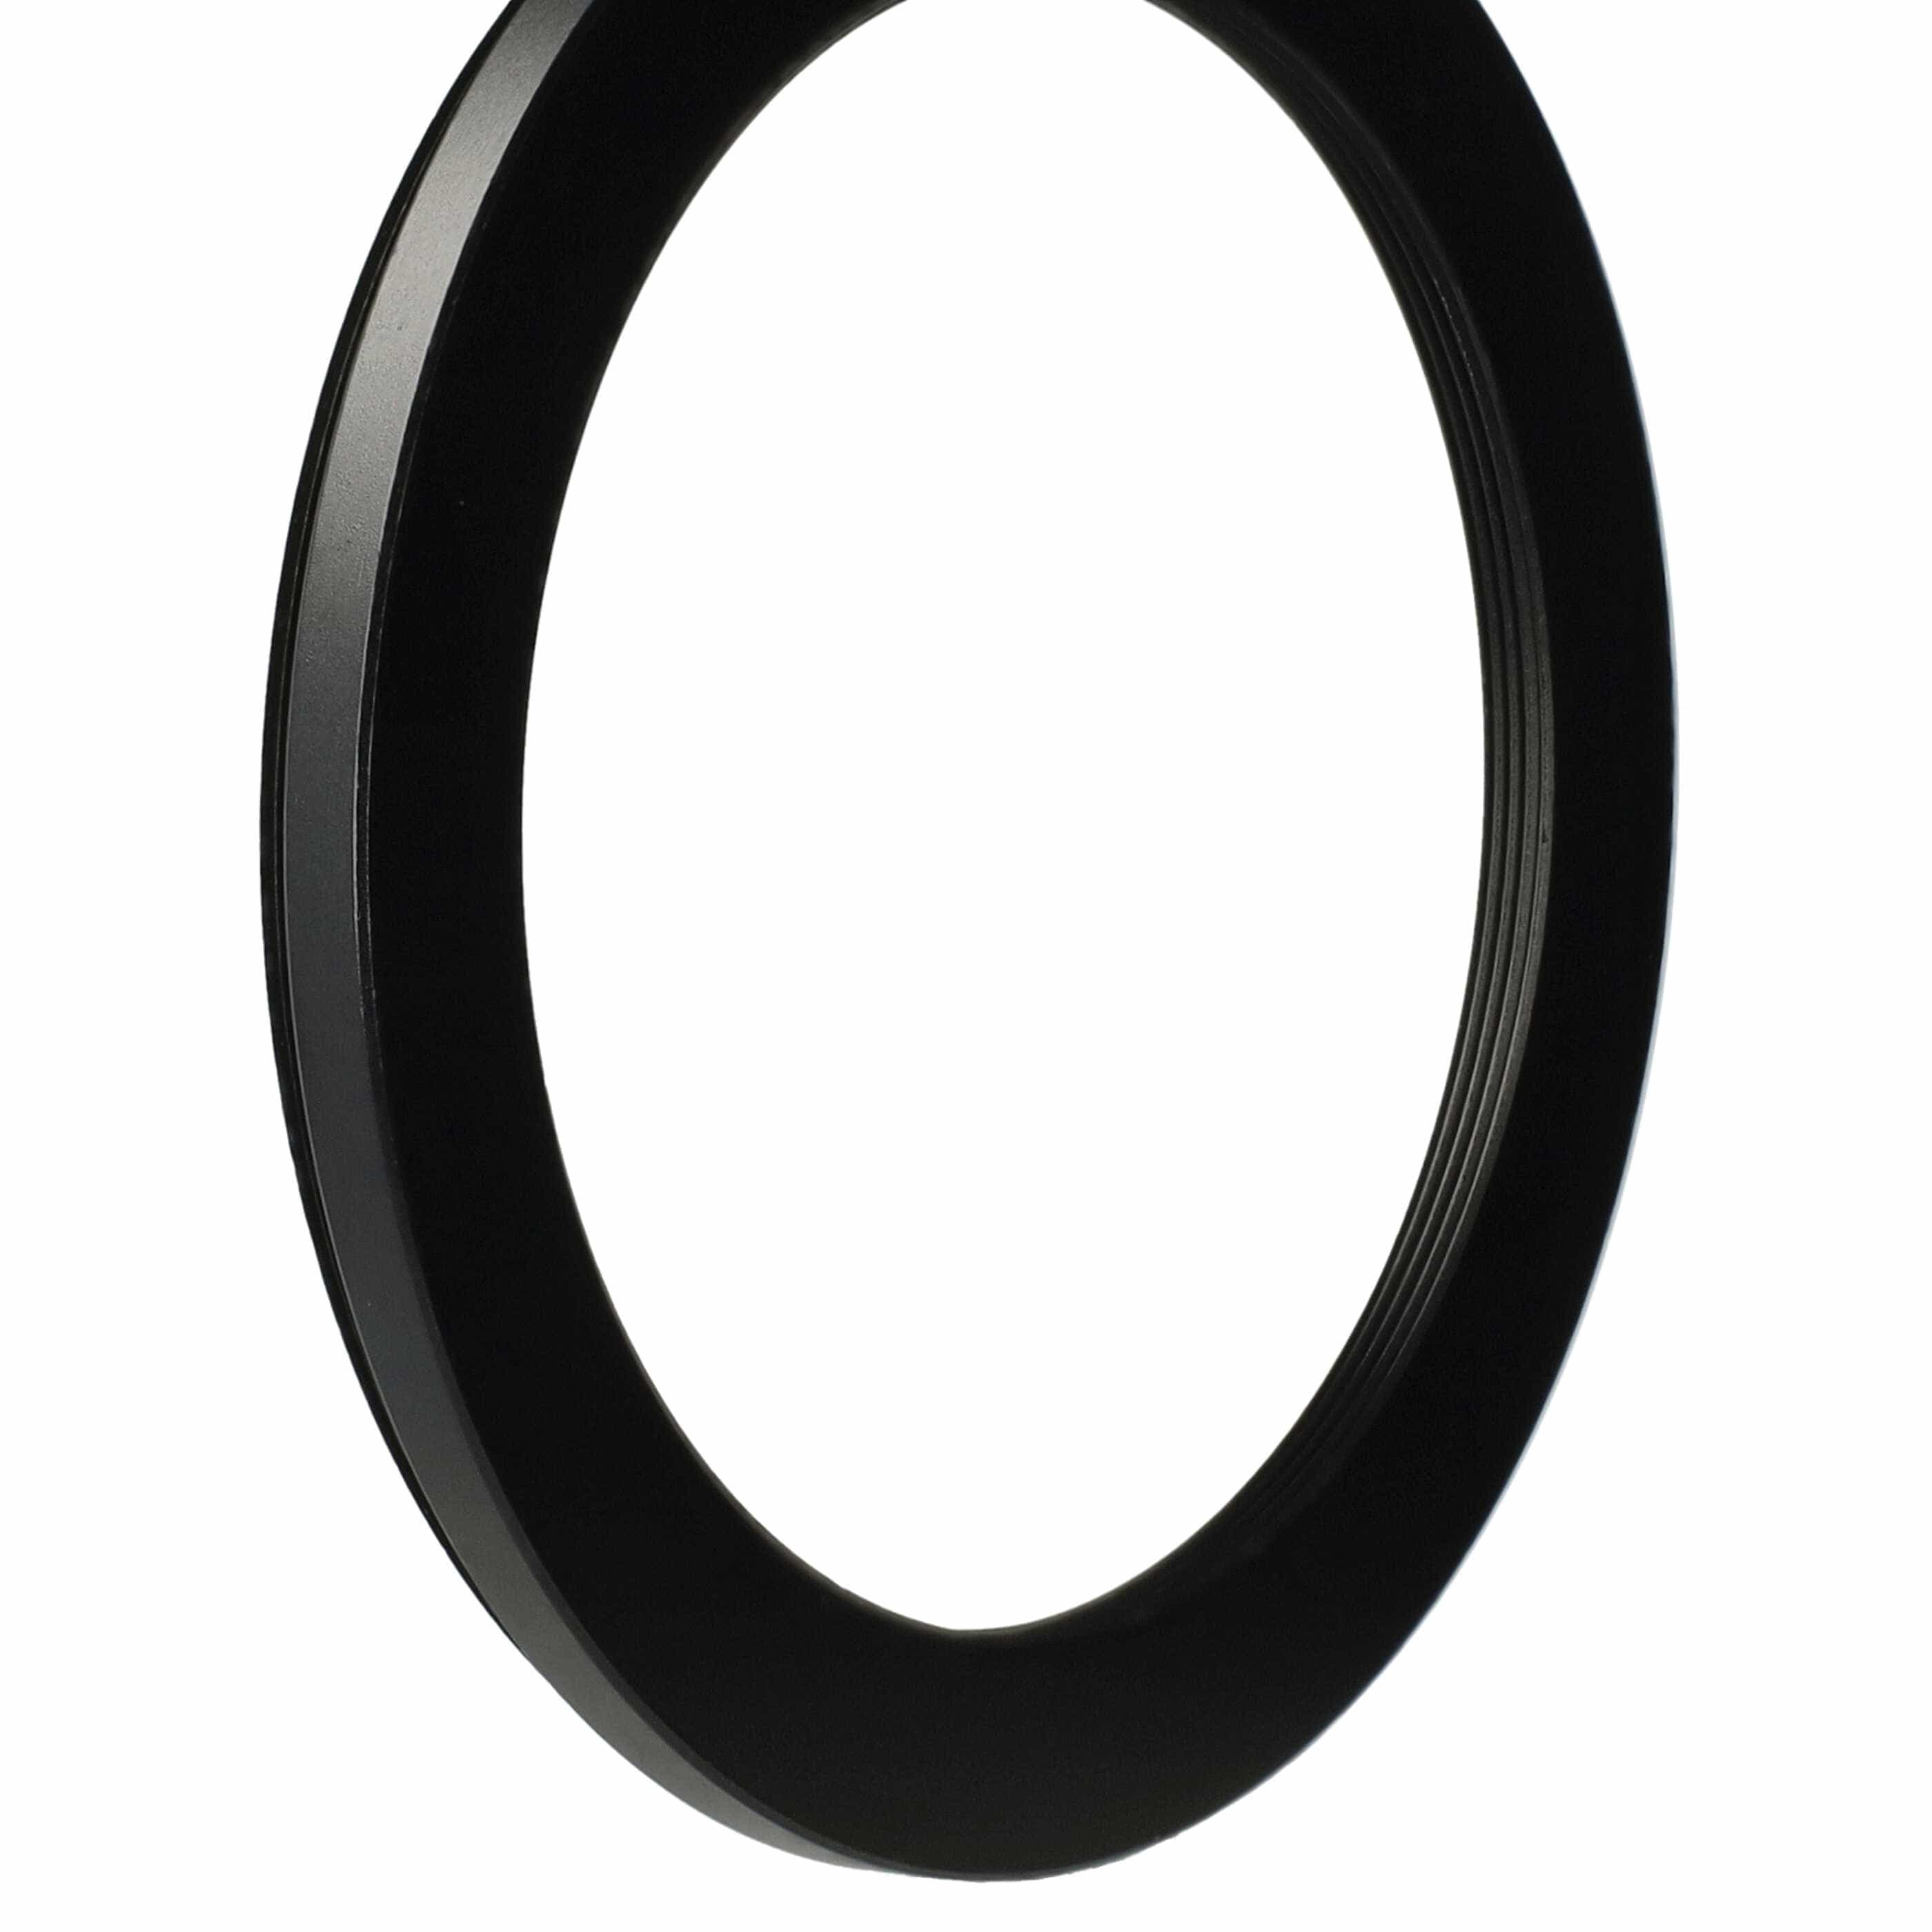 Redukcja filtrowa adapter Step-Down 77 mm - 62 mm pasująca do obiektywu - metal, czarny